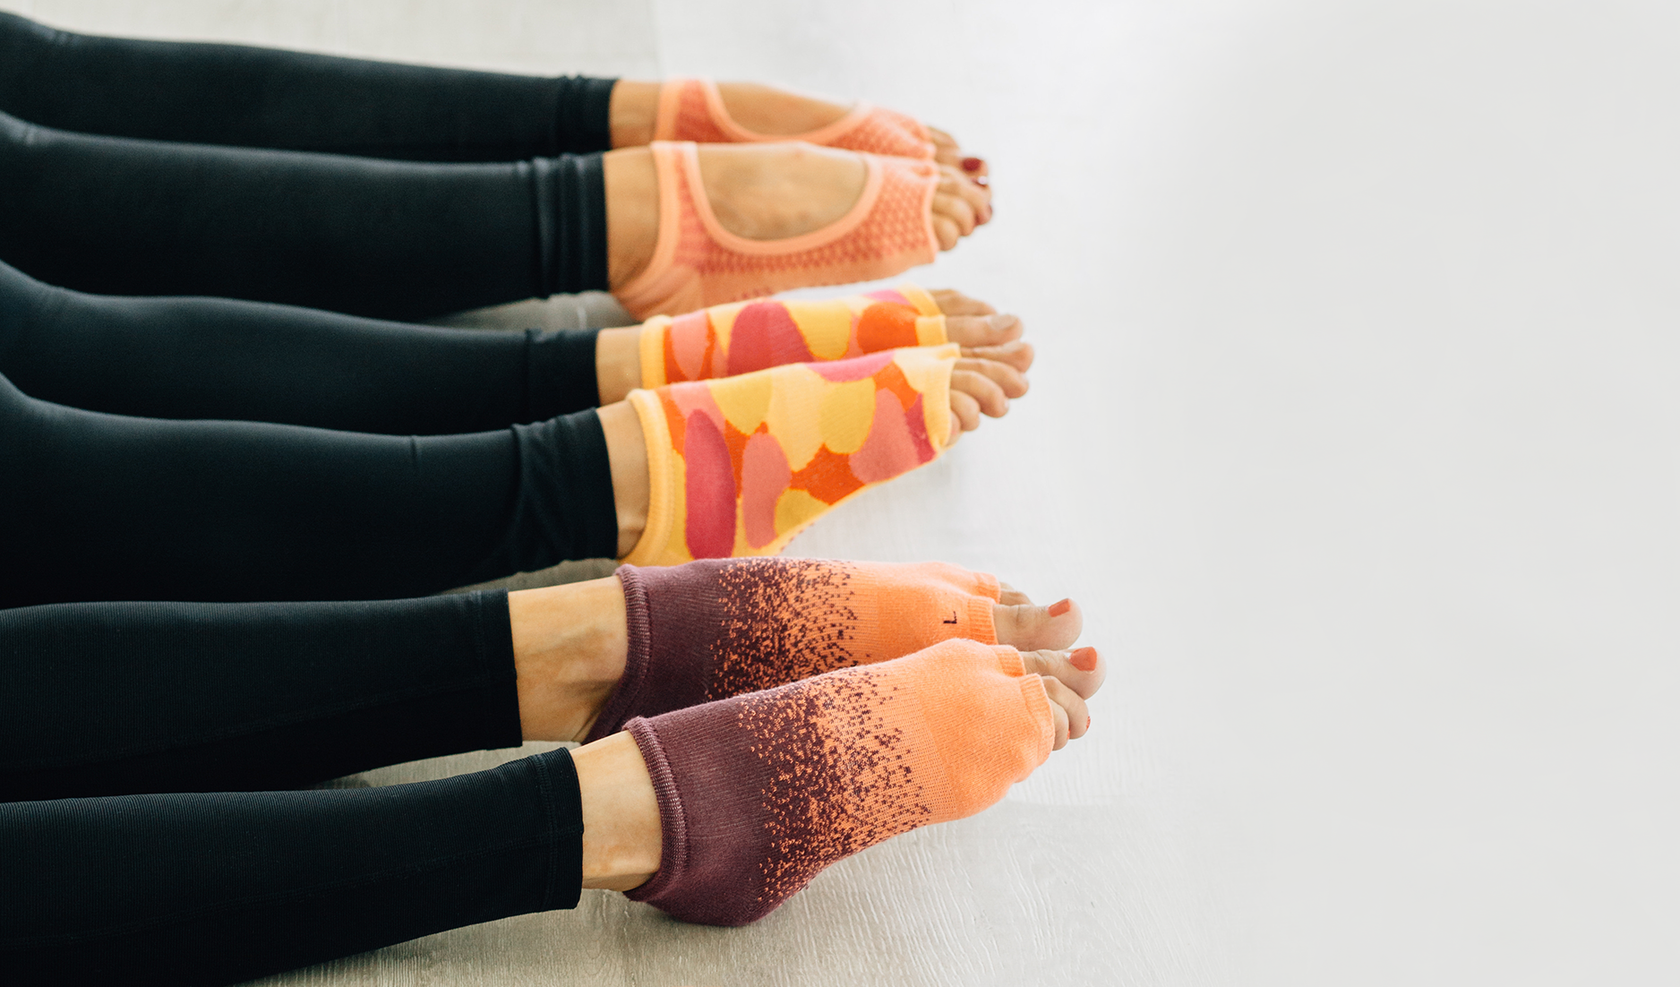 Tucketts Leg Warmers Toeless Non-slip Grip Over the Knee Socks - Cotton  Socks for Yoga, Barre, Pilates, Dance, Ballet